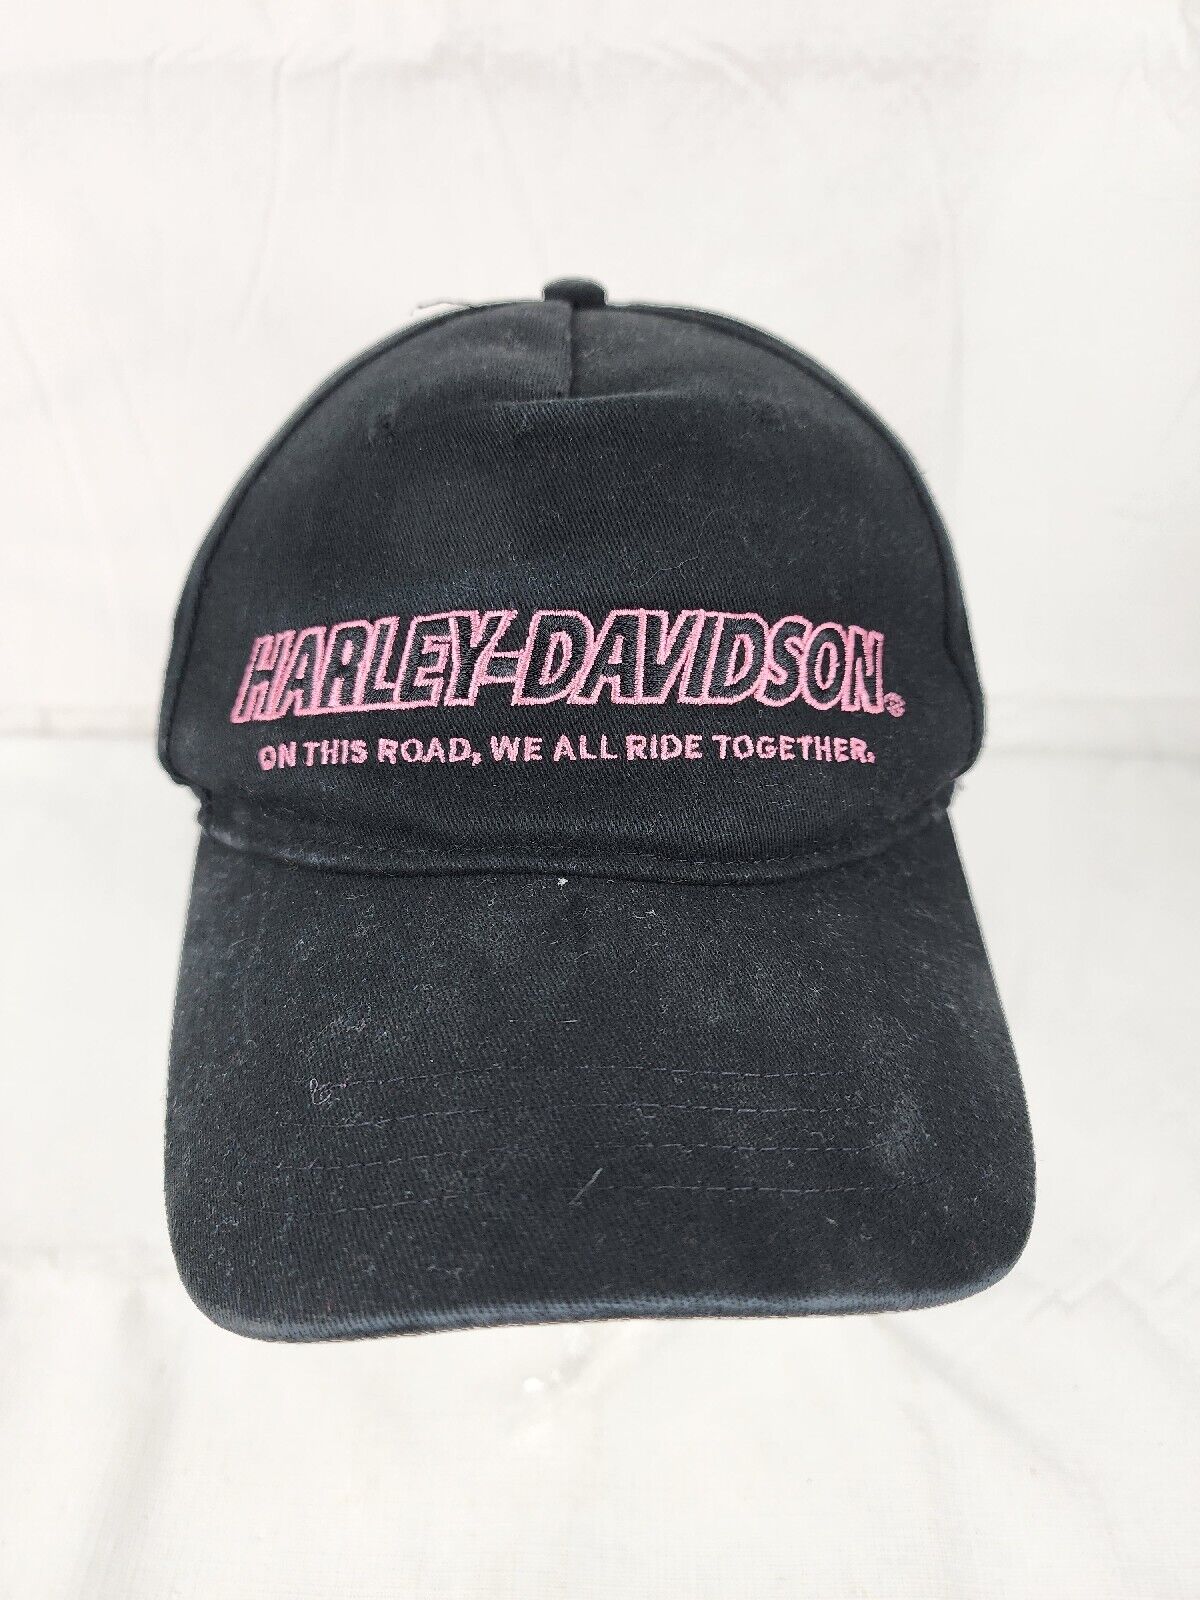 Harley-Davidson On This Road We All Ride Together Black Adjustable Cap Hat